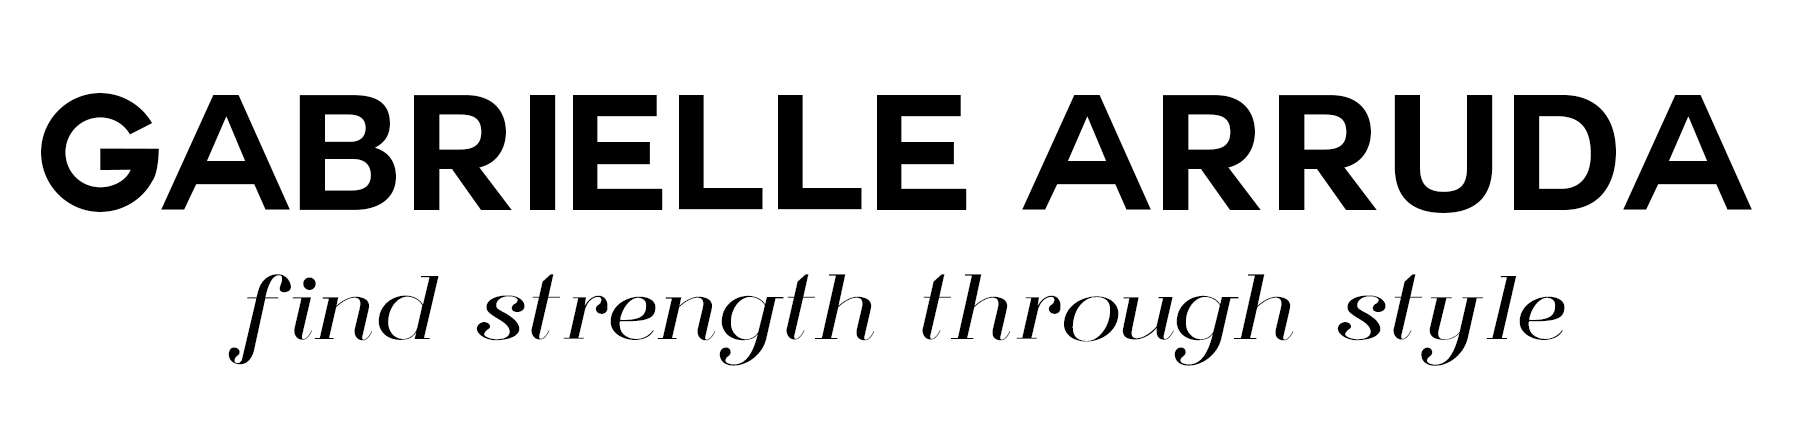 gabrielle arruda find strength through style logo